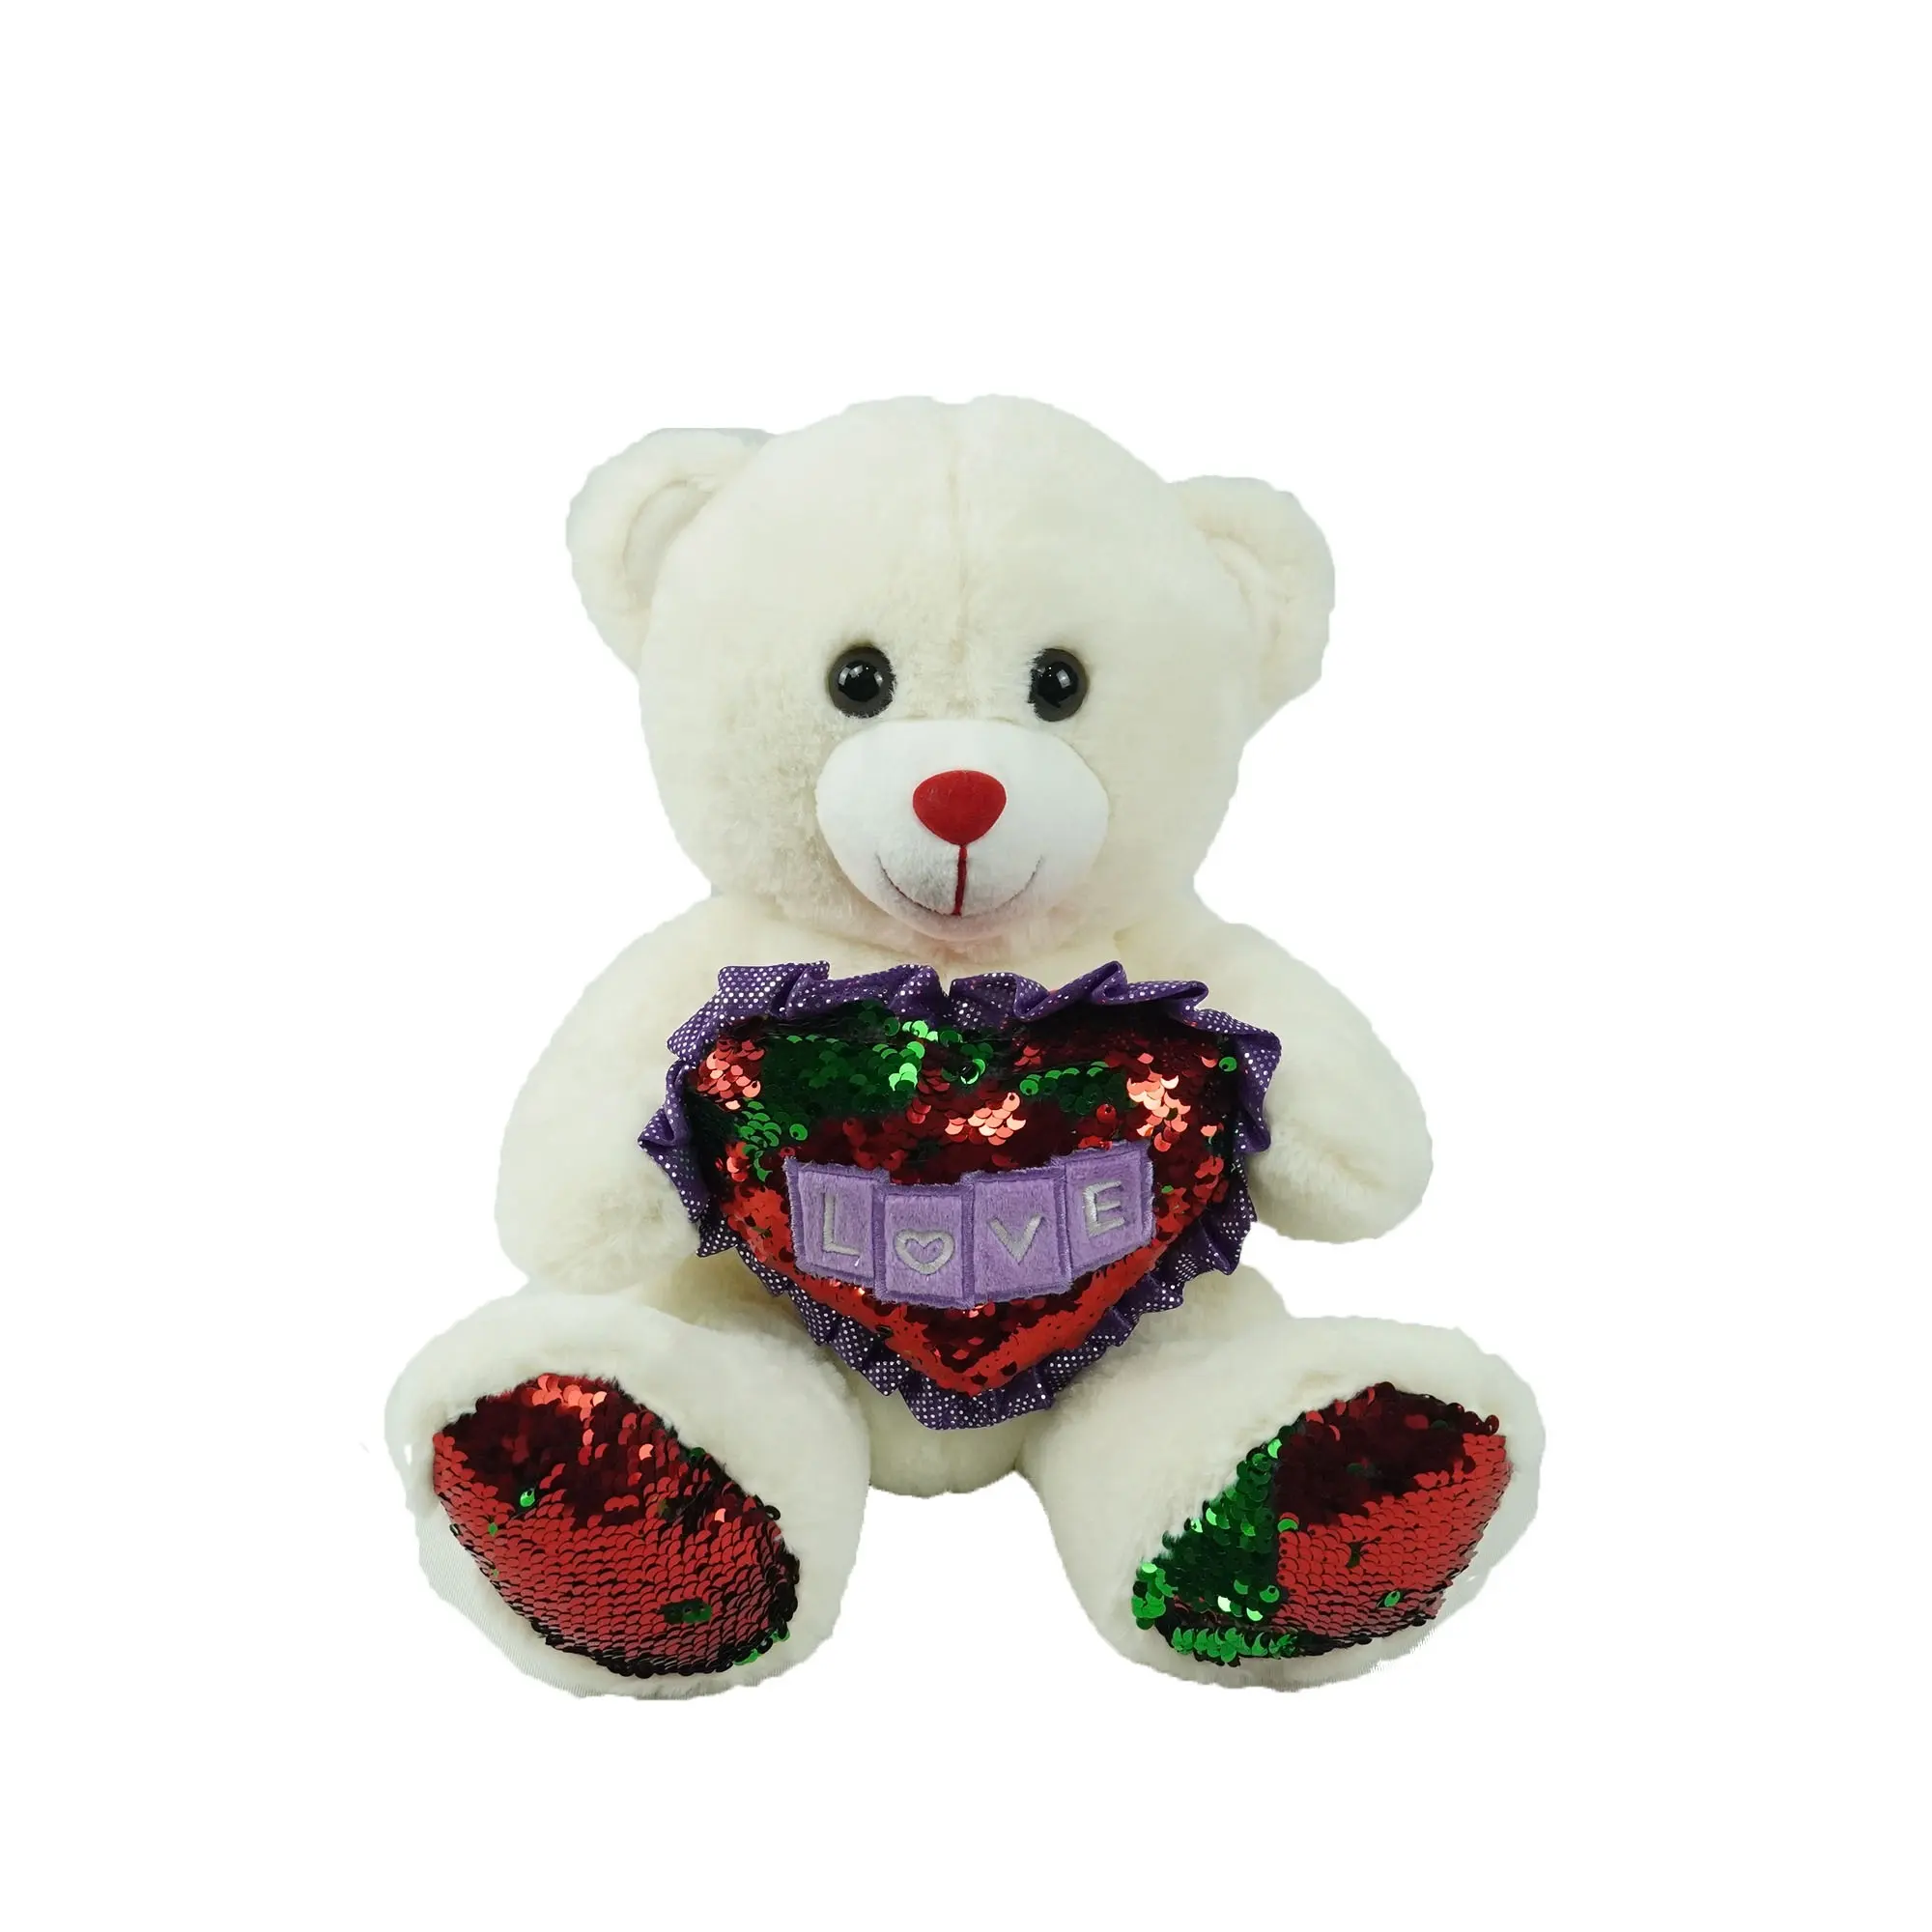 Подарки для влюбленных на День святого Валентина, плюшевый медведь с красными зелеными блестками в форме сердца, игрушка на заказ